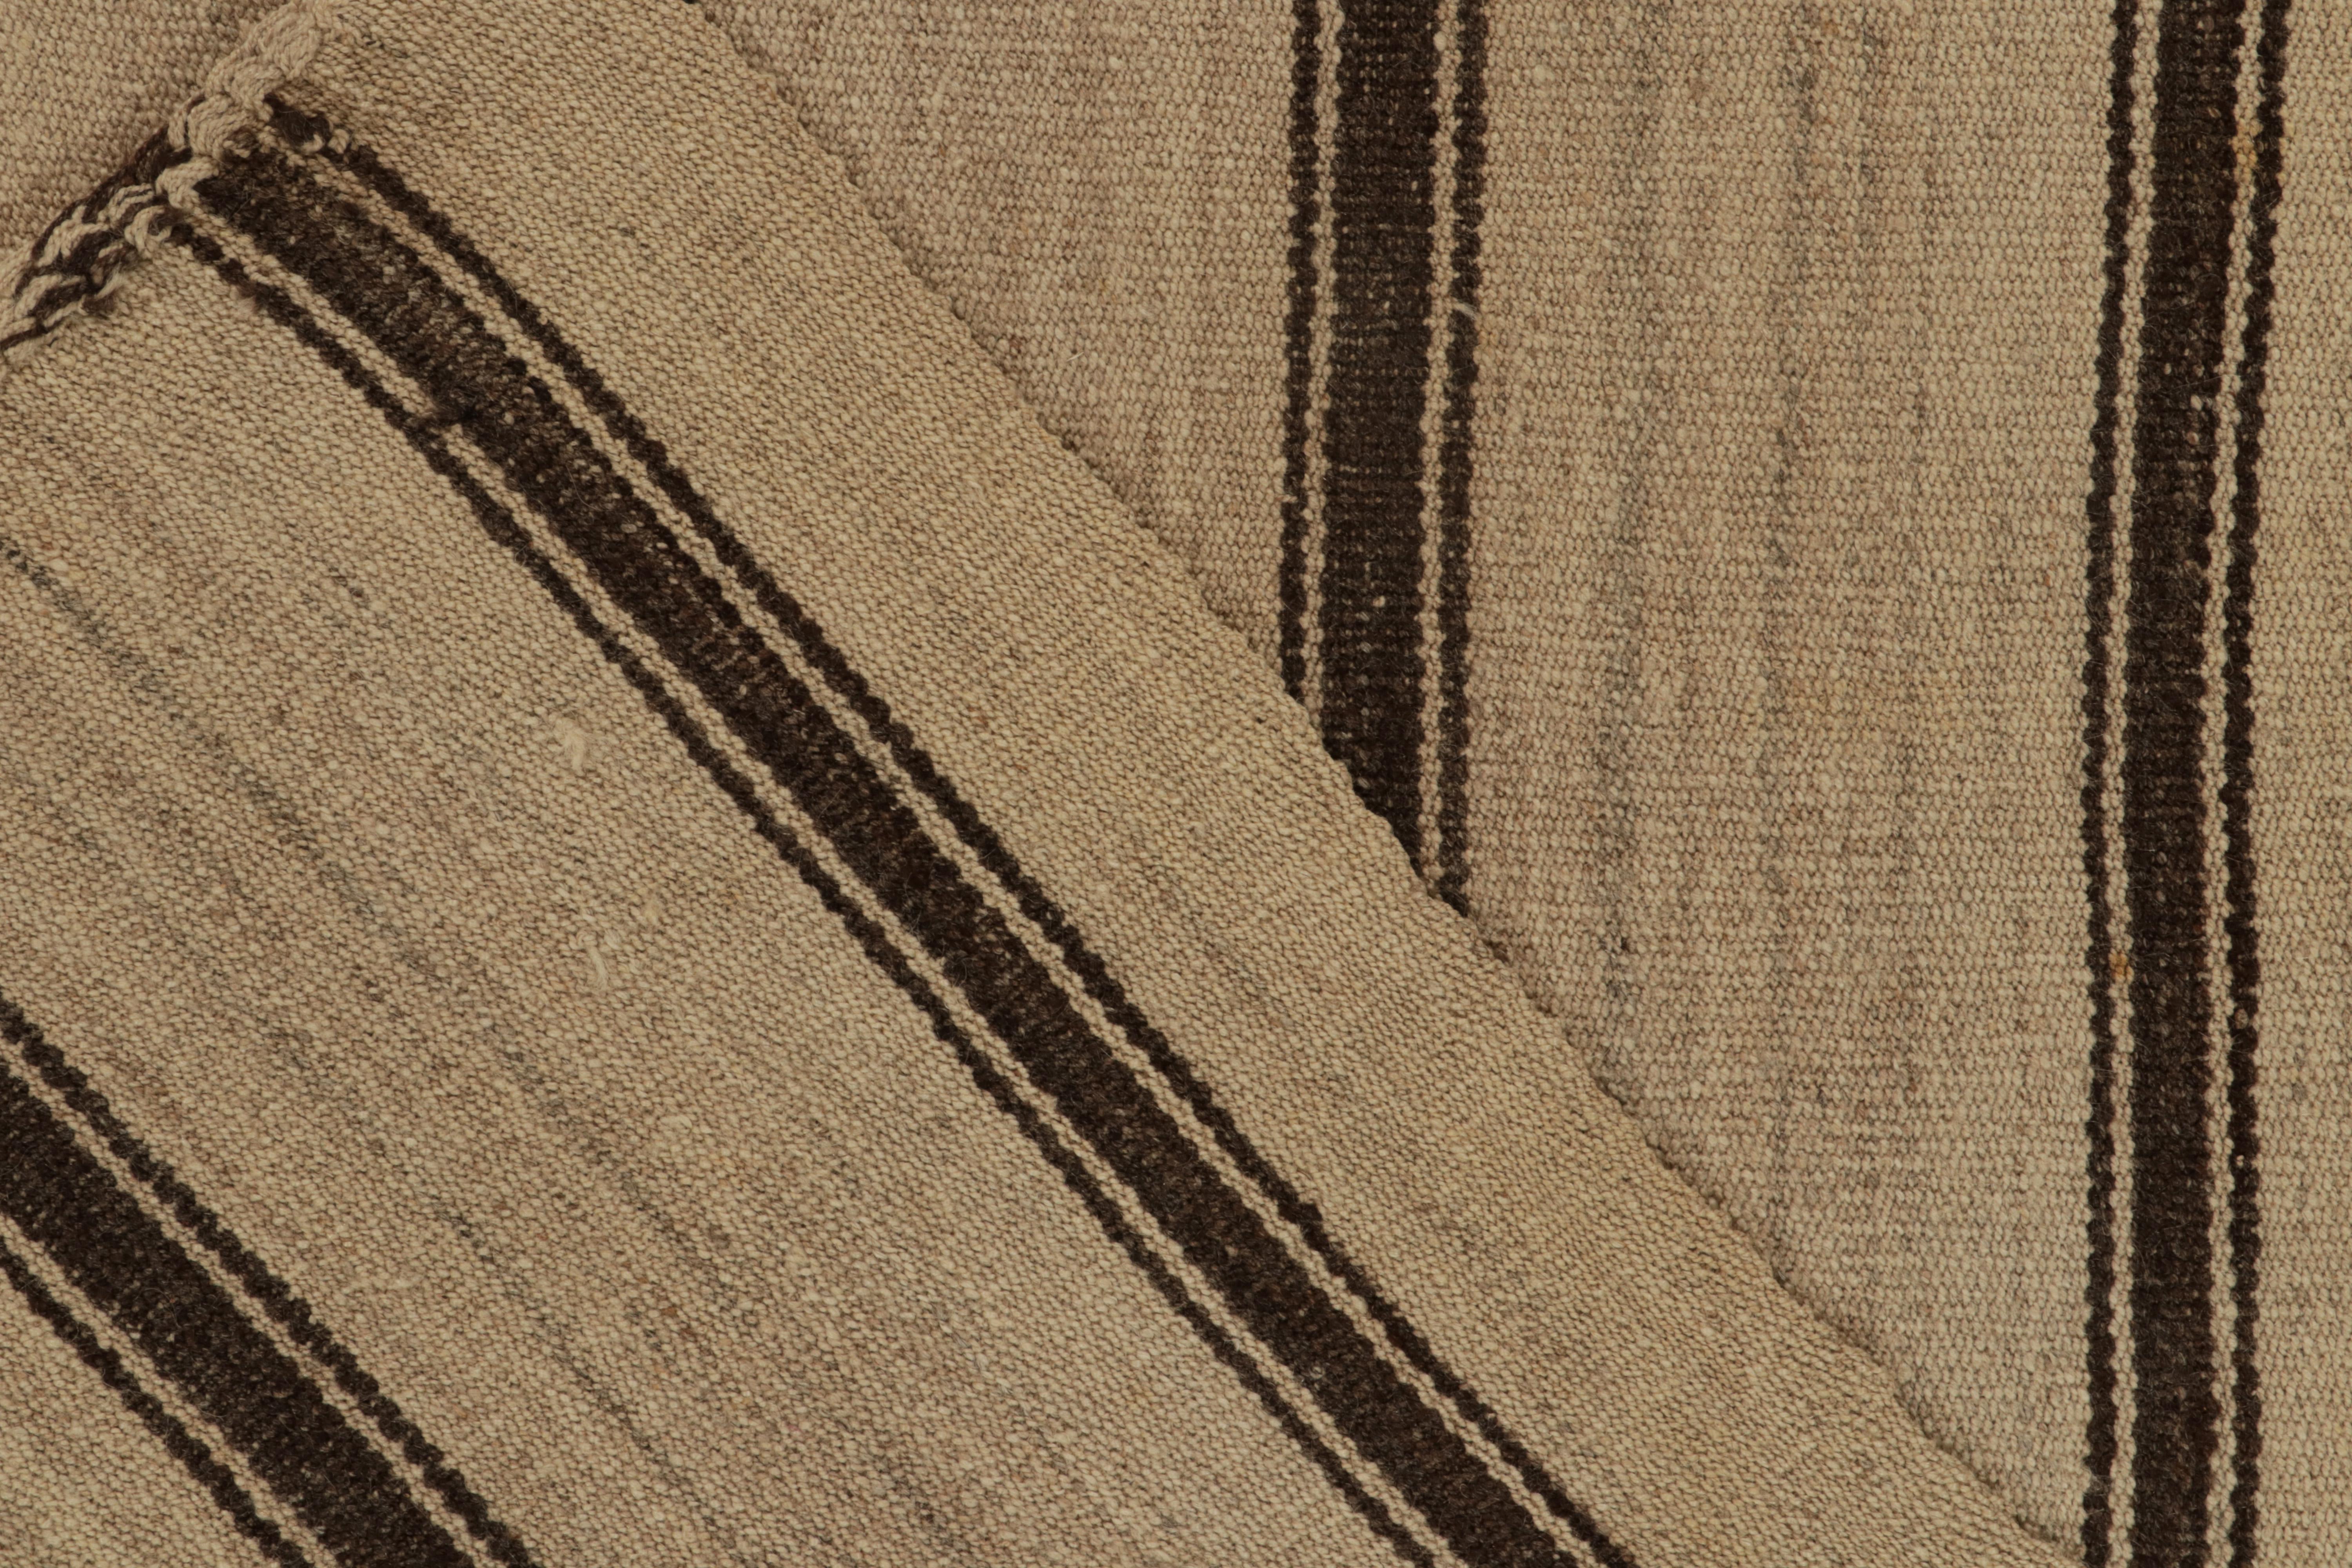 Wool Handwoven Vintage Kilim Beige-Brown Stripe Patterns by Rug & Kilim For Sale